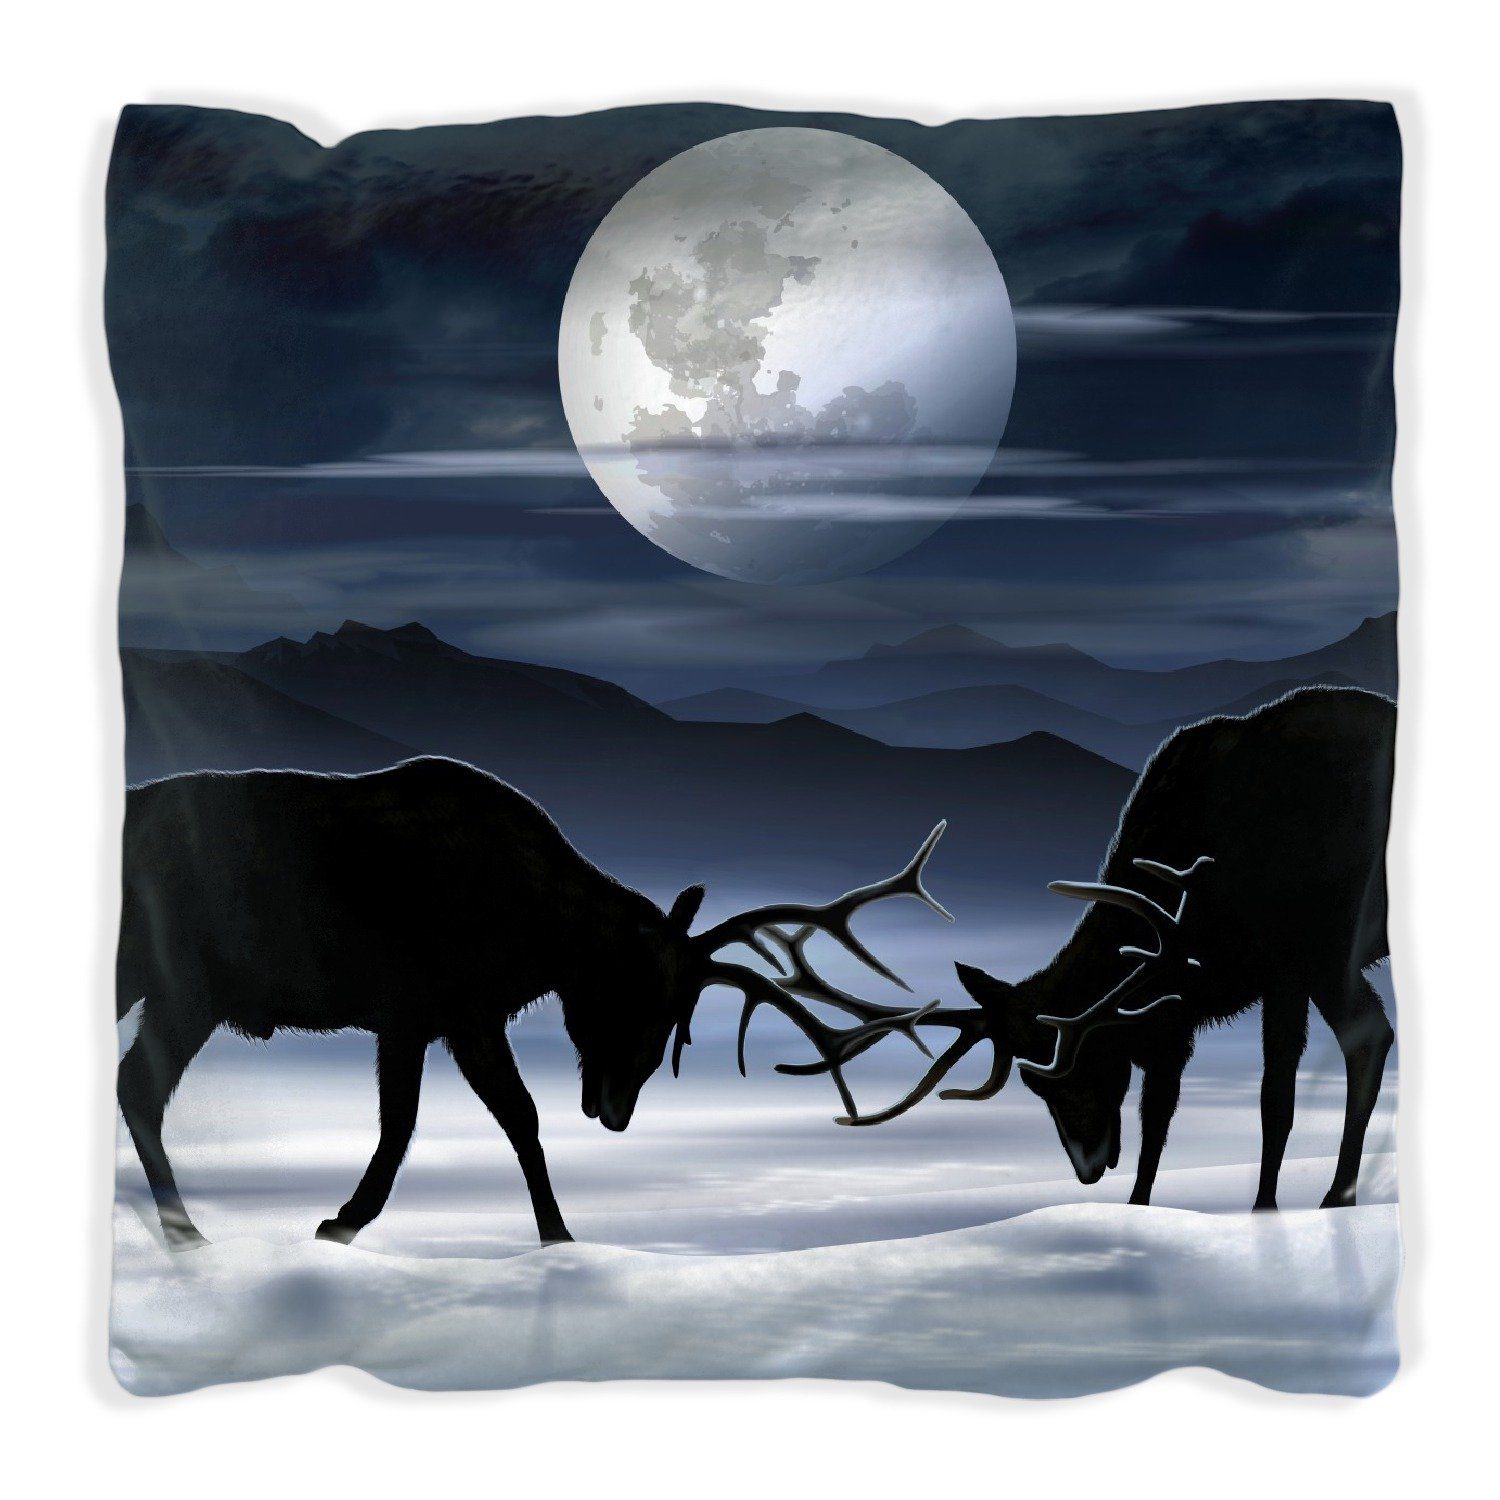 Elch handgenäht Silhouette Mondschein bei Wallario am Schnee im Dekokissen - Abend,